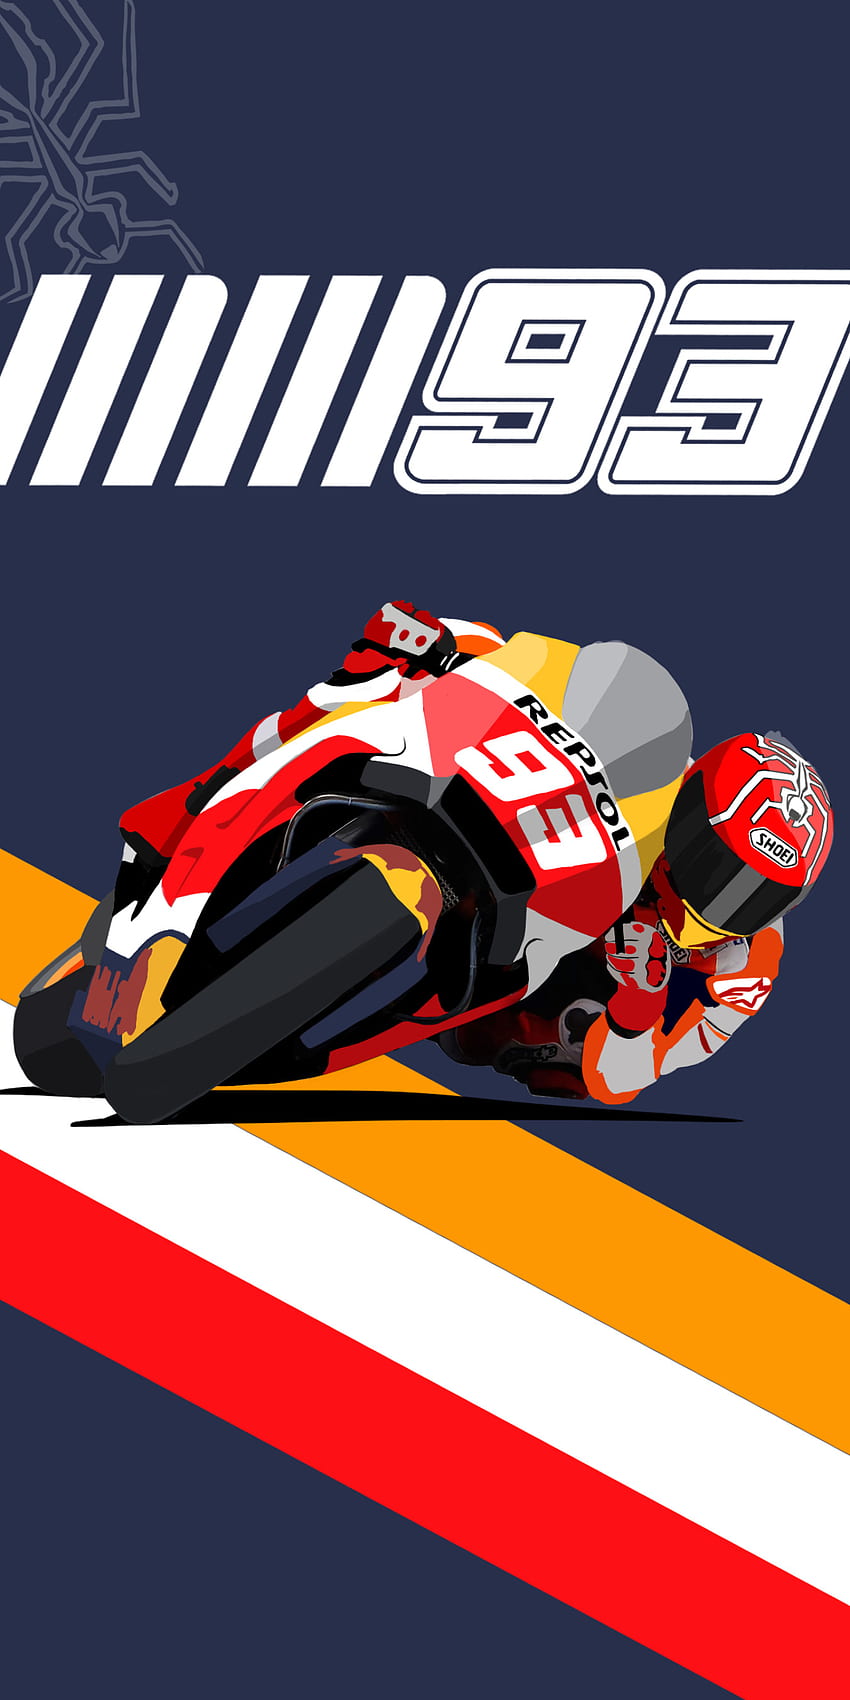 Saya melakukan sesuatu hari ini! MM93 untuk semua penggemar Marquez, MotoGP wallpaper ponsel HD